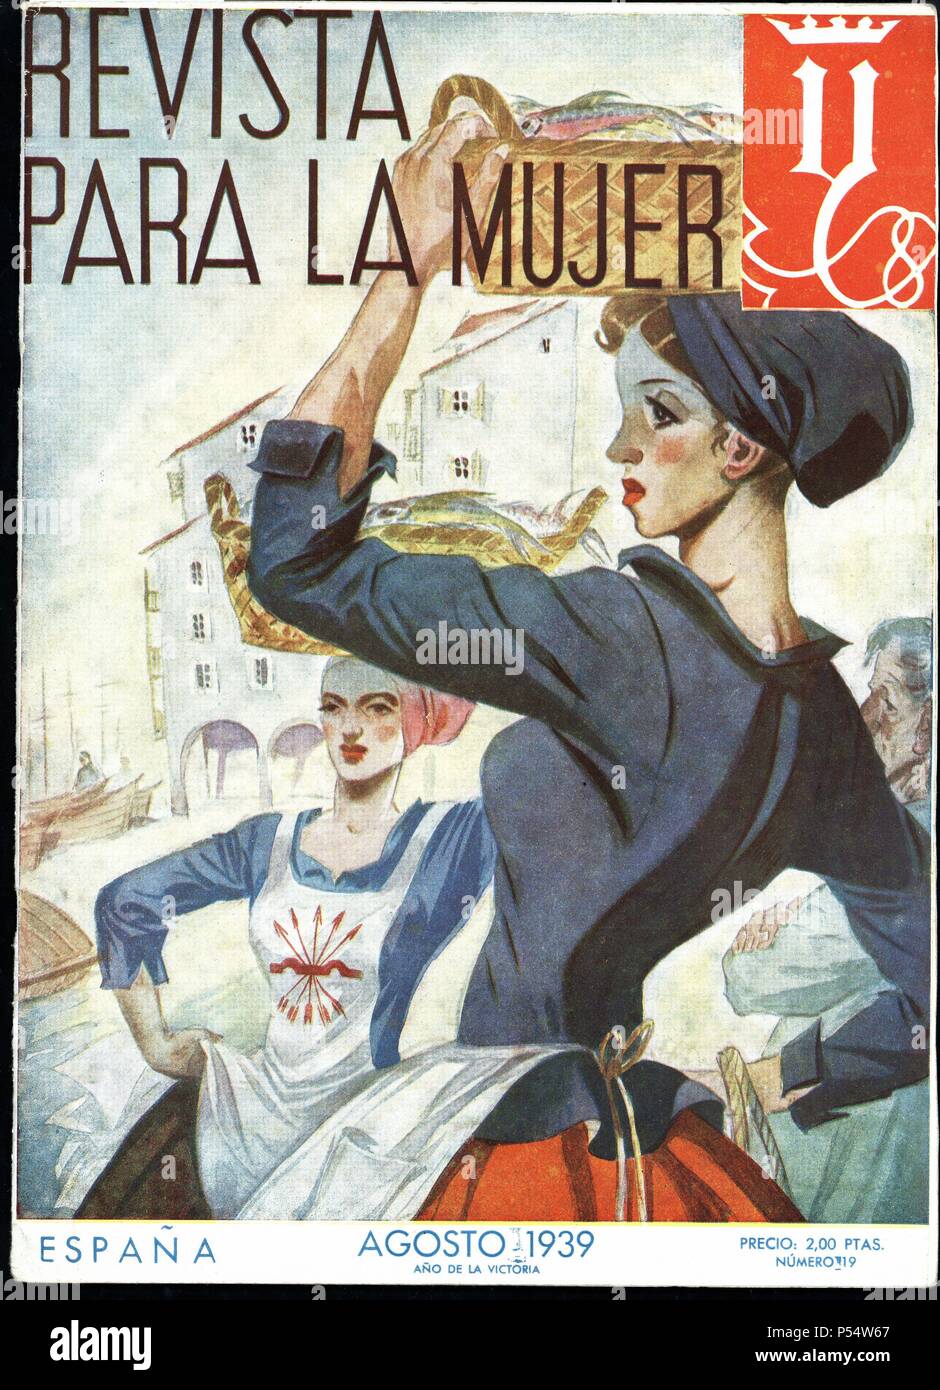 Portada de la Revista para la mujer. Editada por la sección femenina de  Falange Española. Nº 19, Agosto de 1939 Stock Photo - Alamy